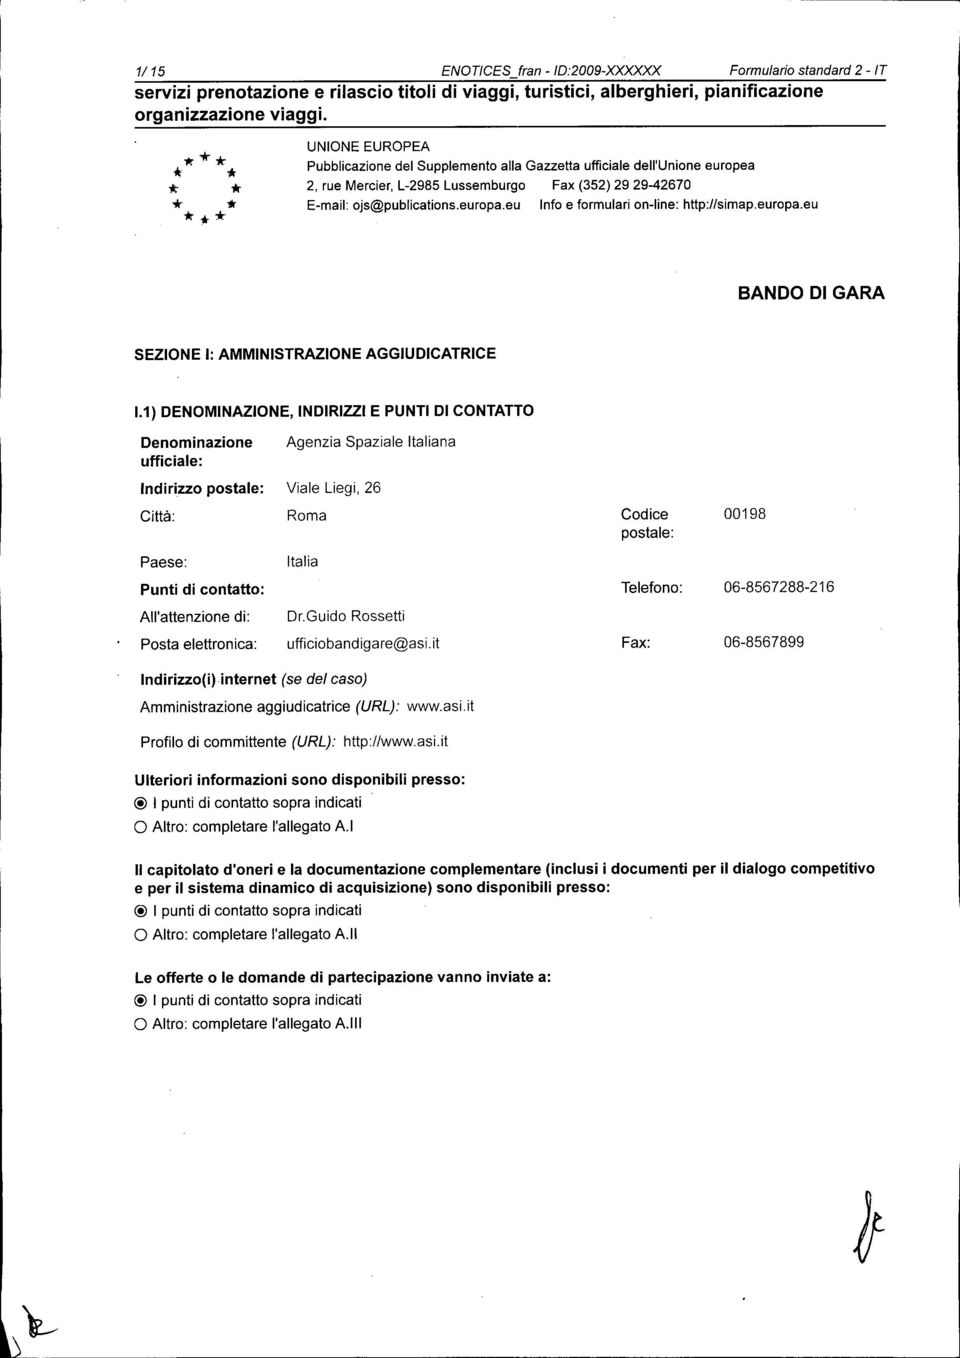 eu Info e formulari on-line: http://simap.europa.eu BANDO DI GARA SEZIONE I: AMMINISTRAZIONE AGGIUDICATRICE 1.